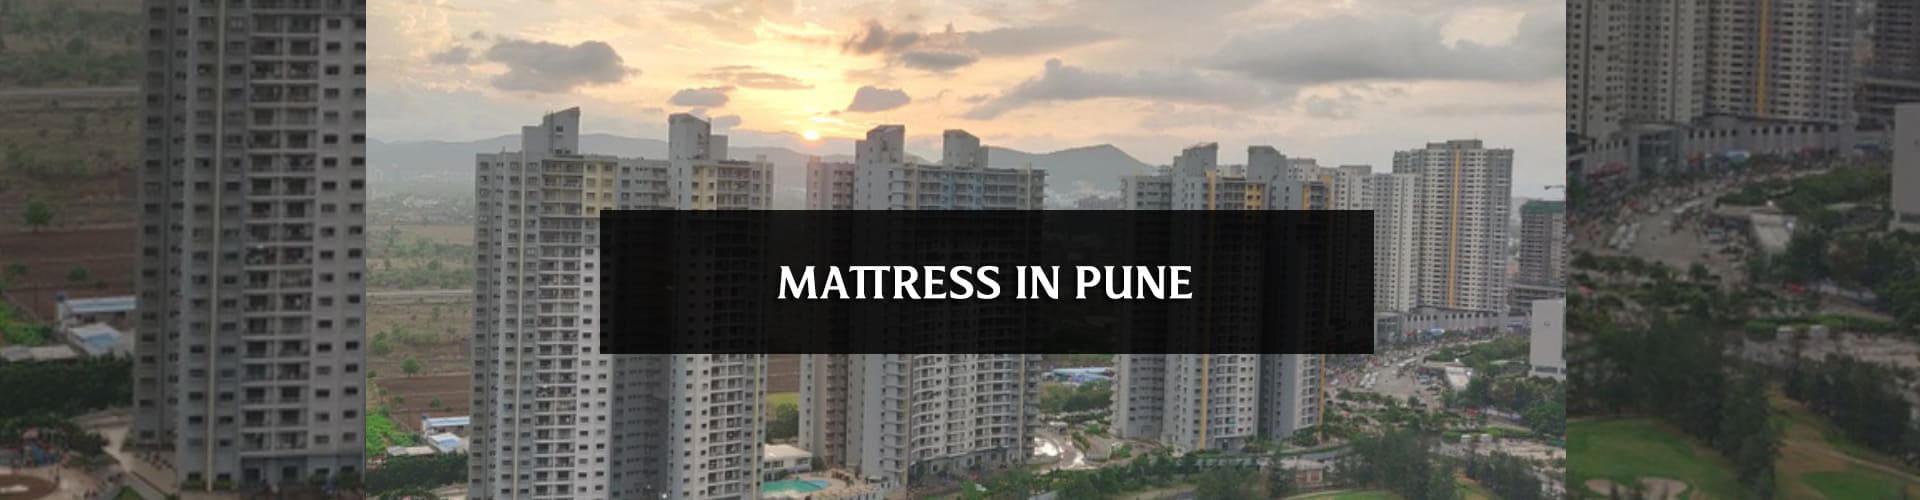 Buy mattress online in pune